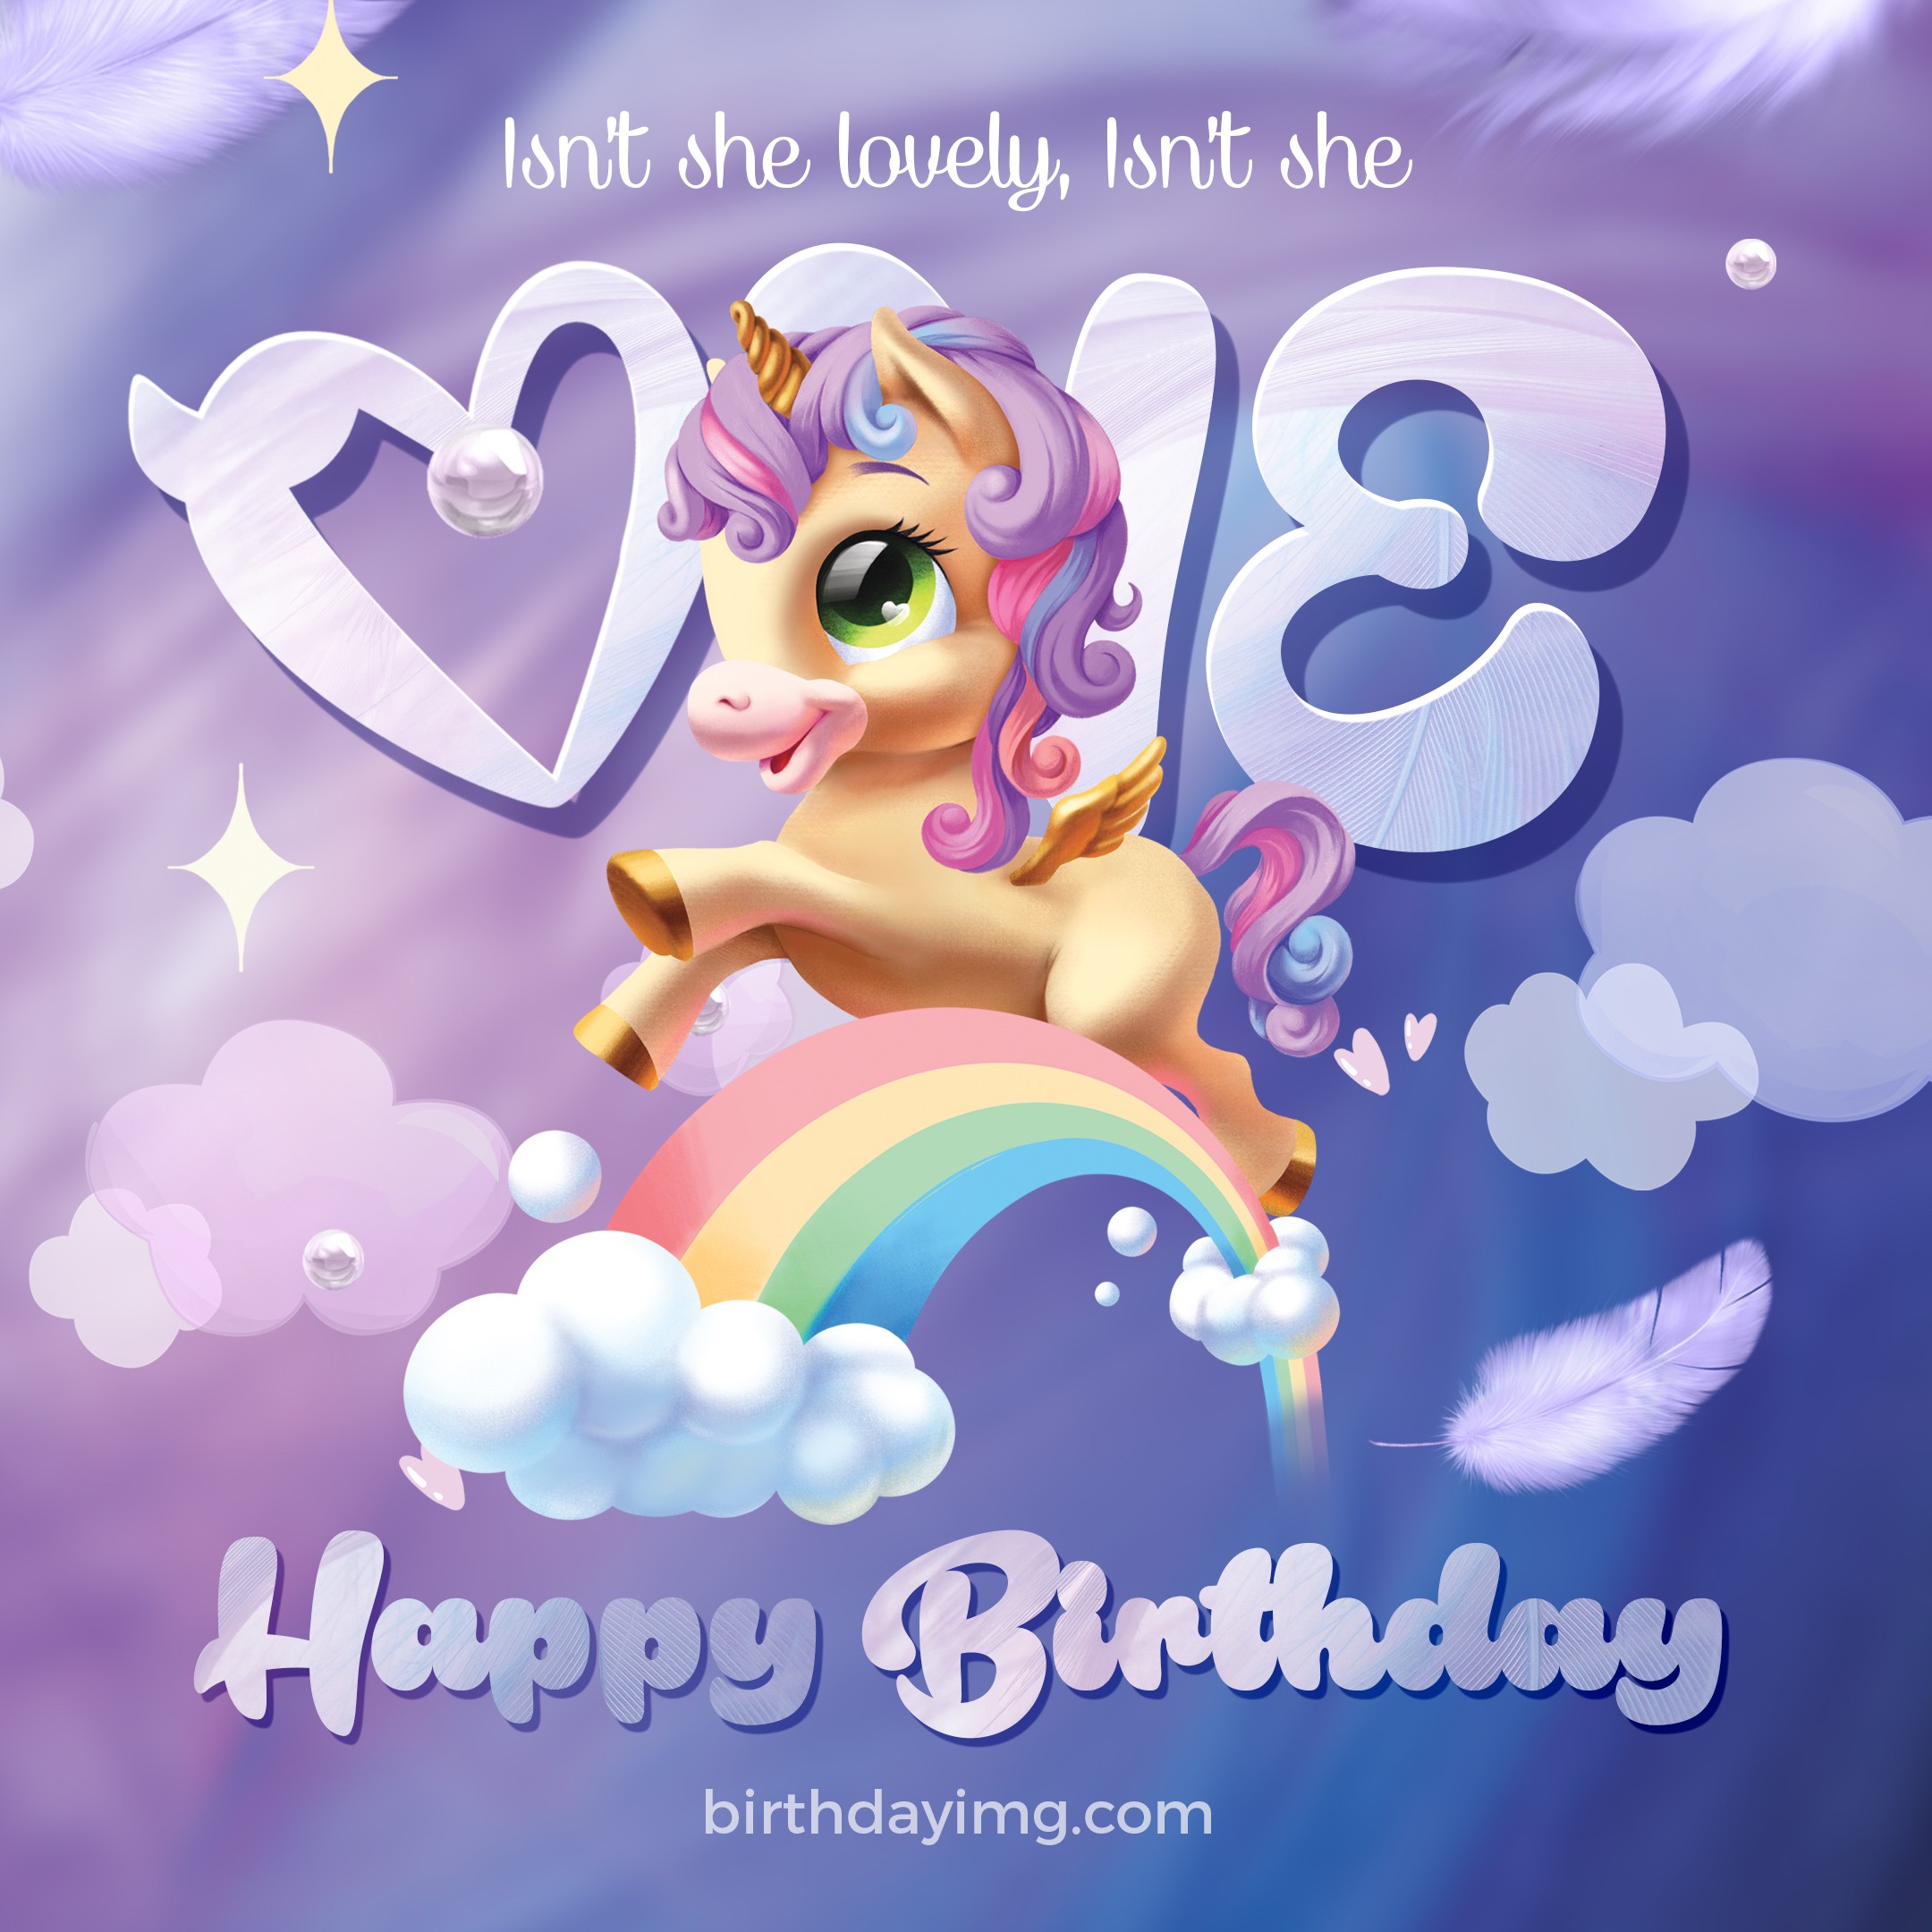 Free 1st Year Happy Birthday Image with Unicorn - birthdayimg.com